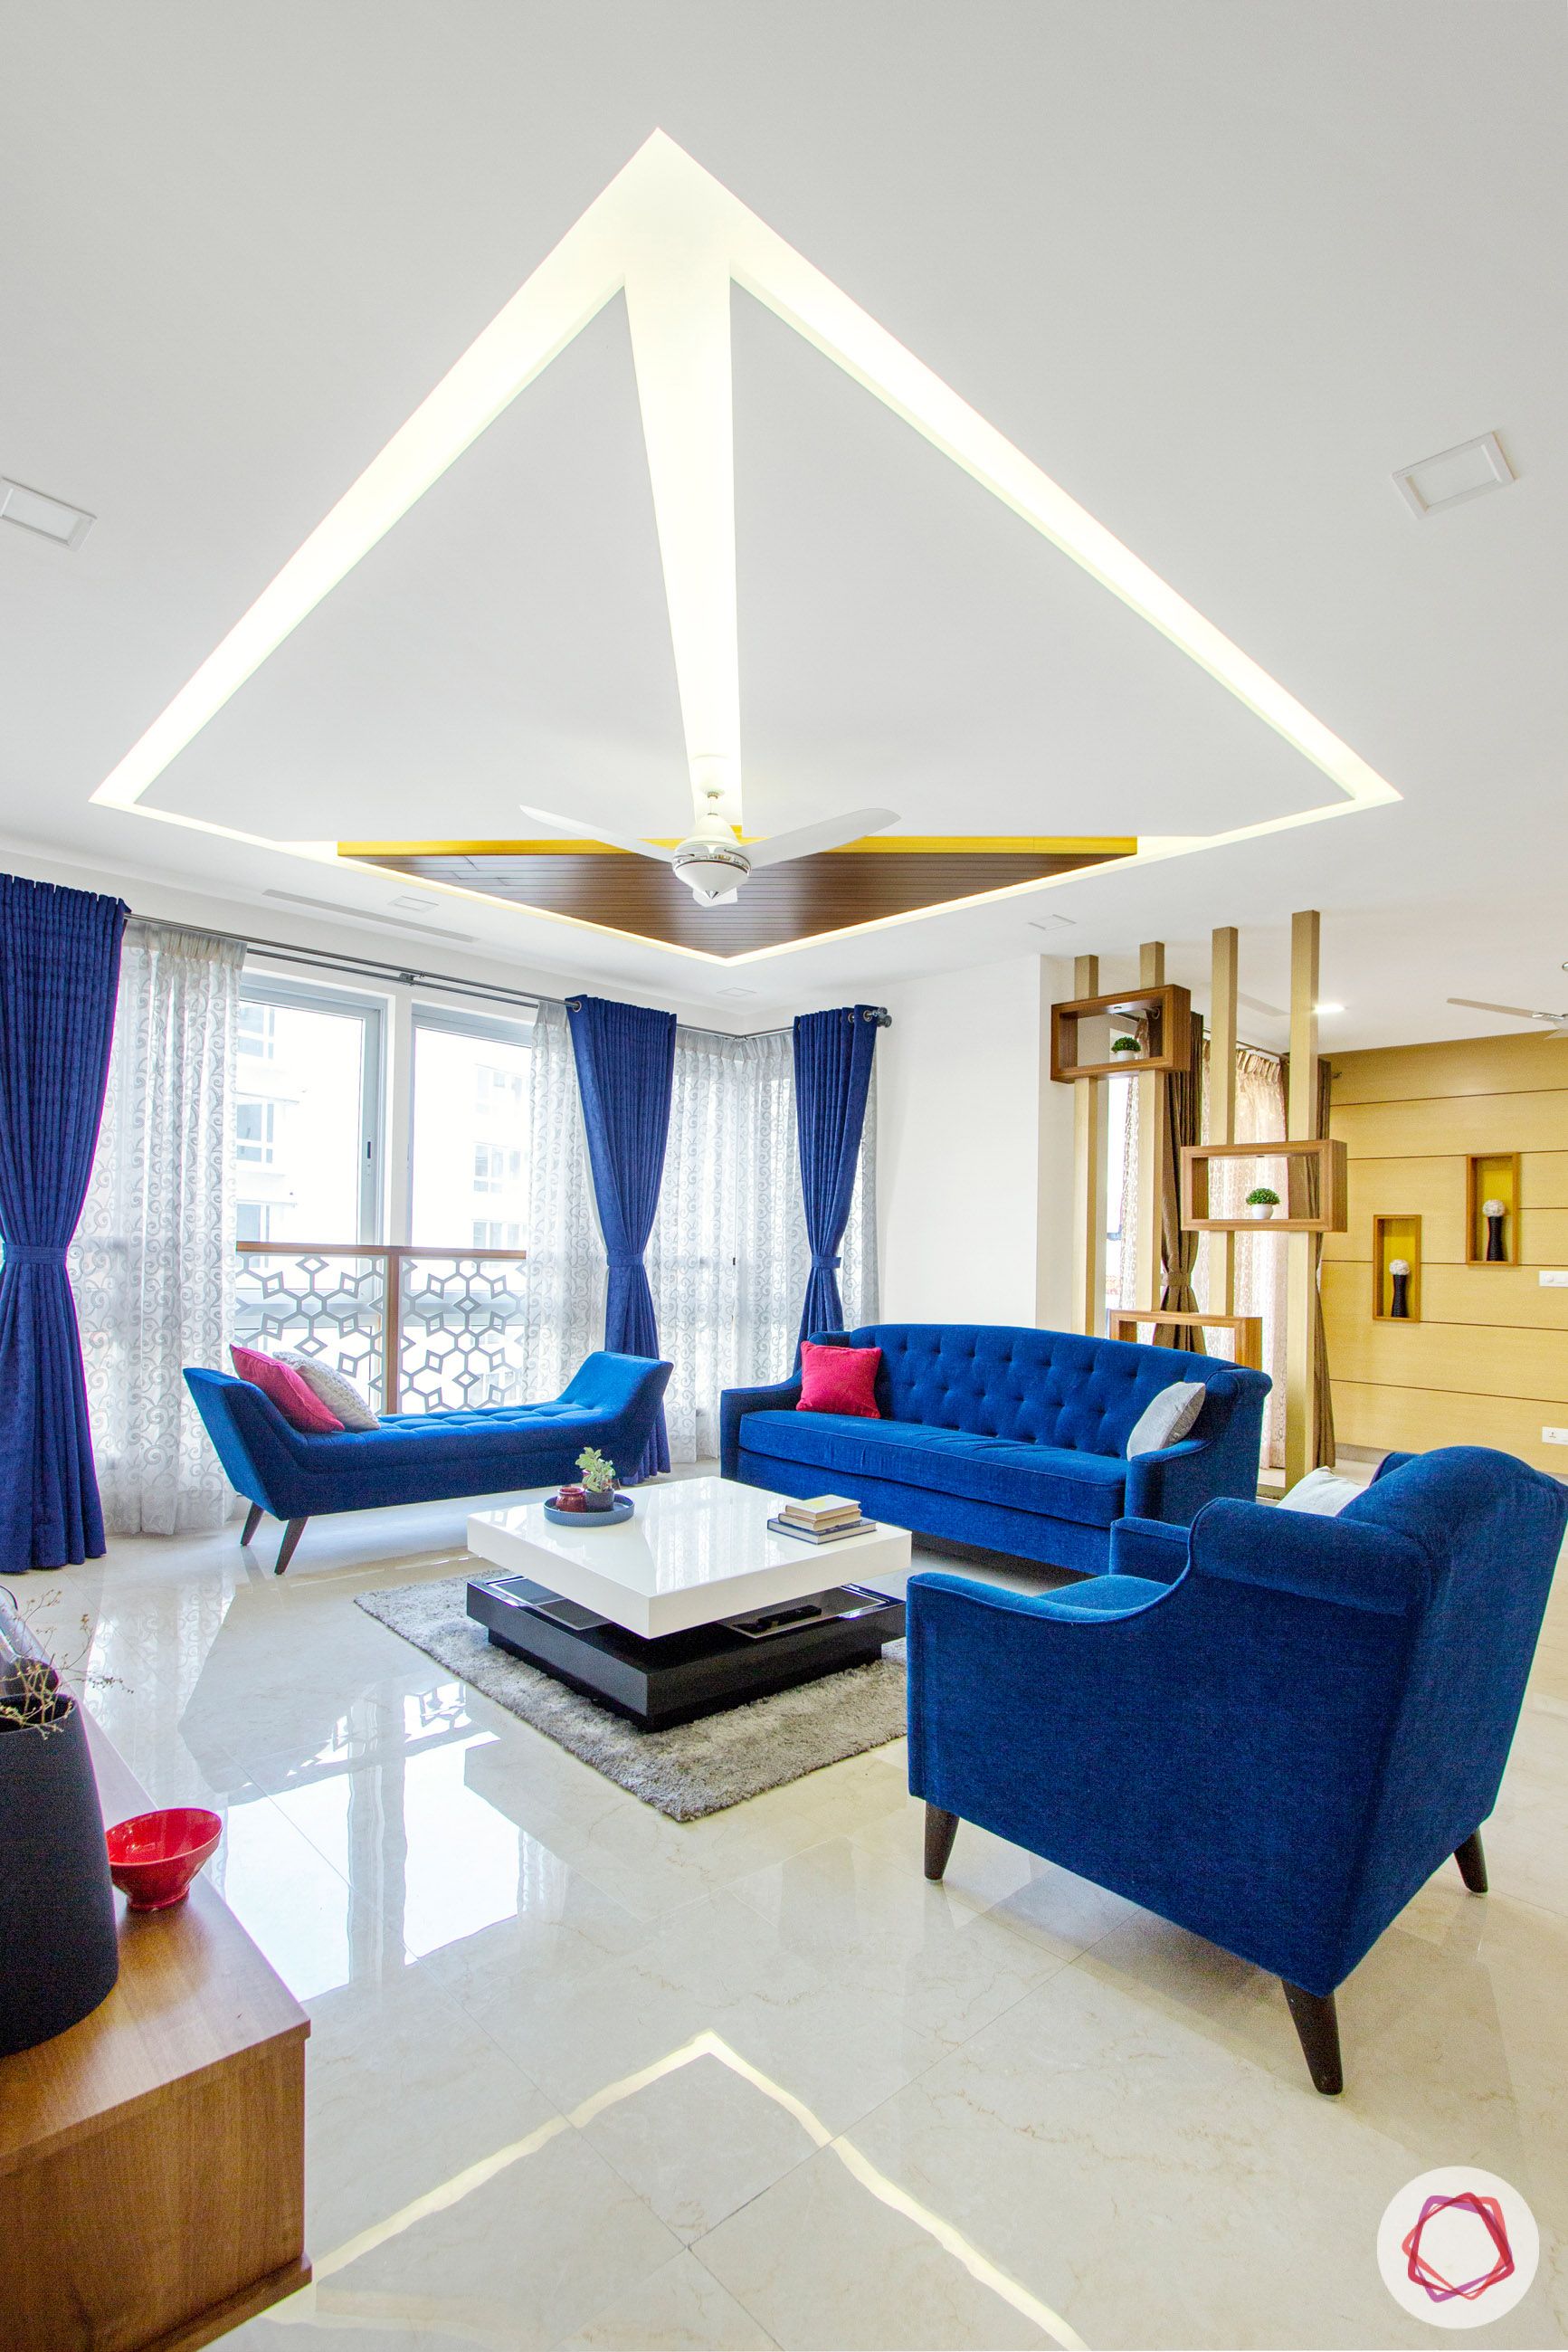 POP-designs-for-living-room-false-ceiling-blue-sofa